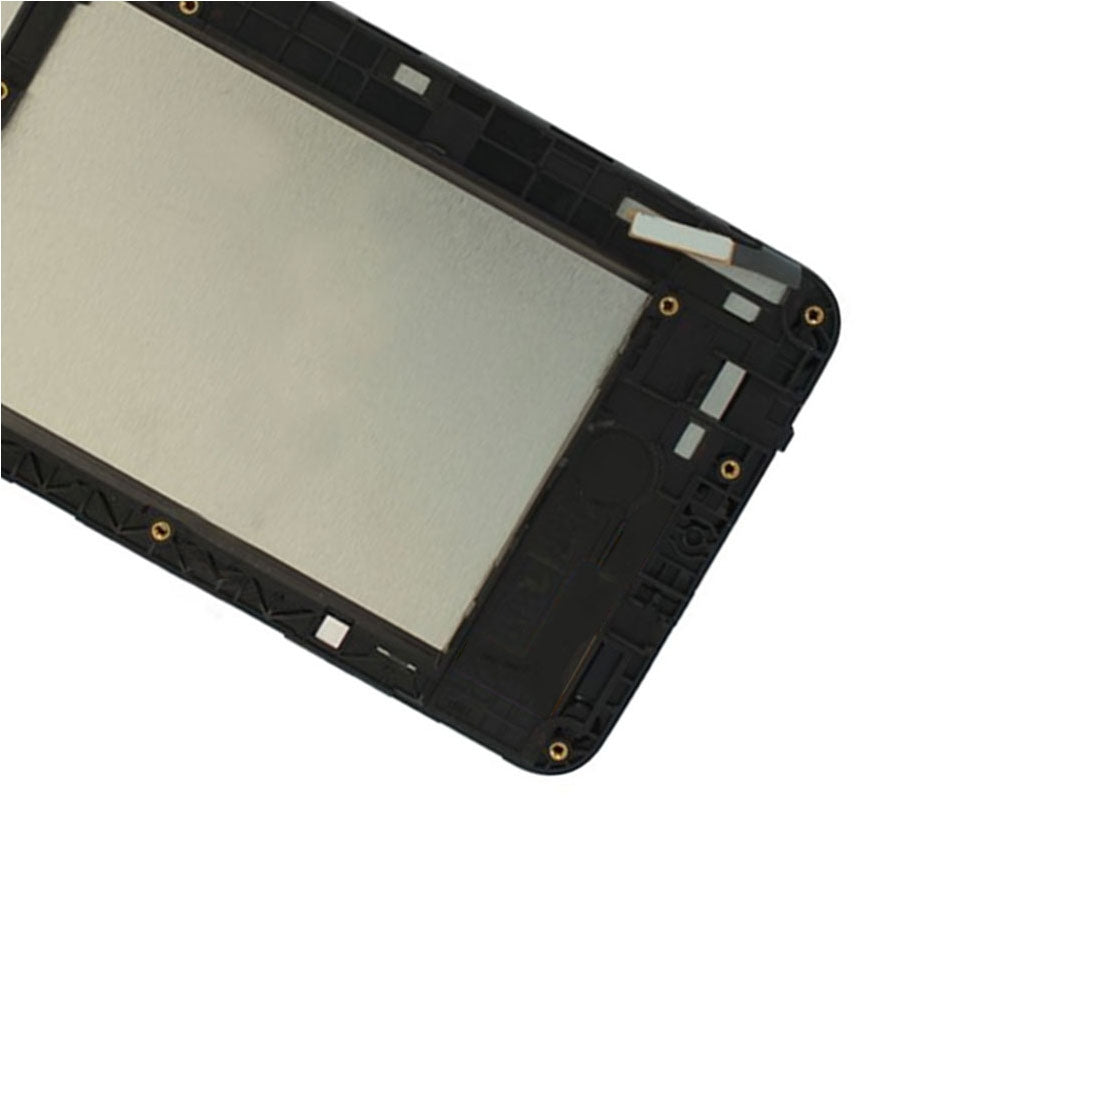 Full Screen LCD + Touch + Frame LG K4 2017 M160 Black